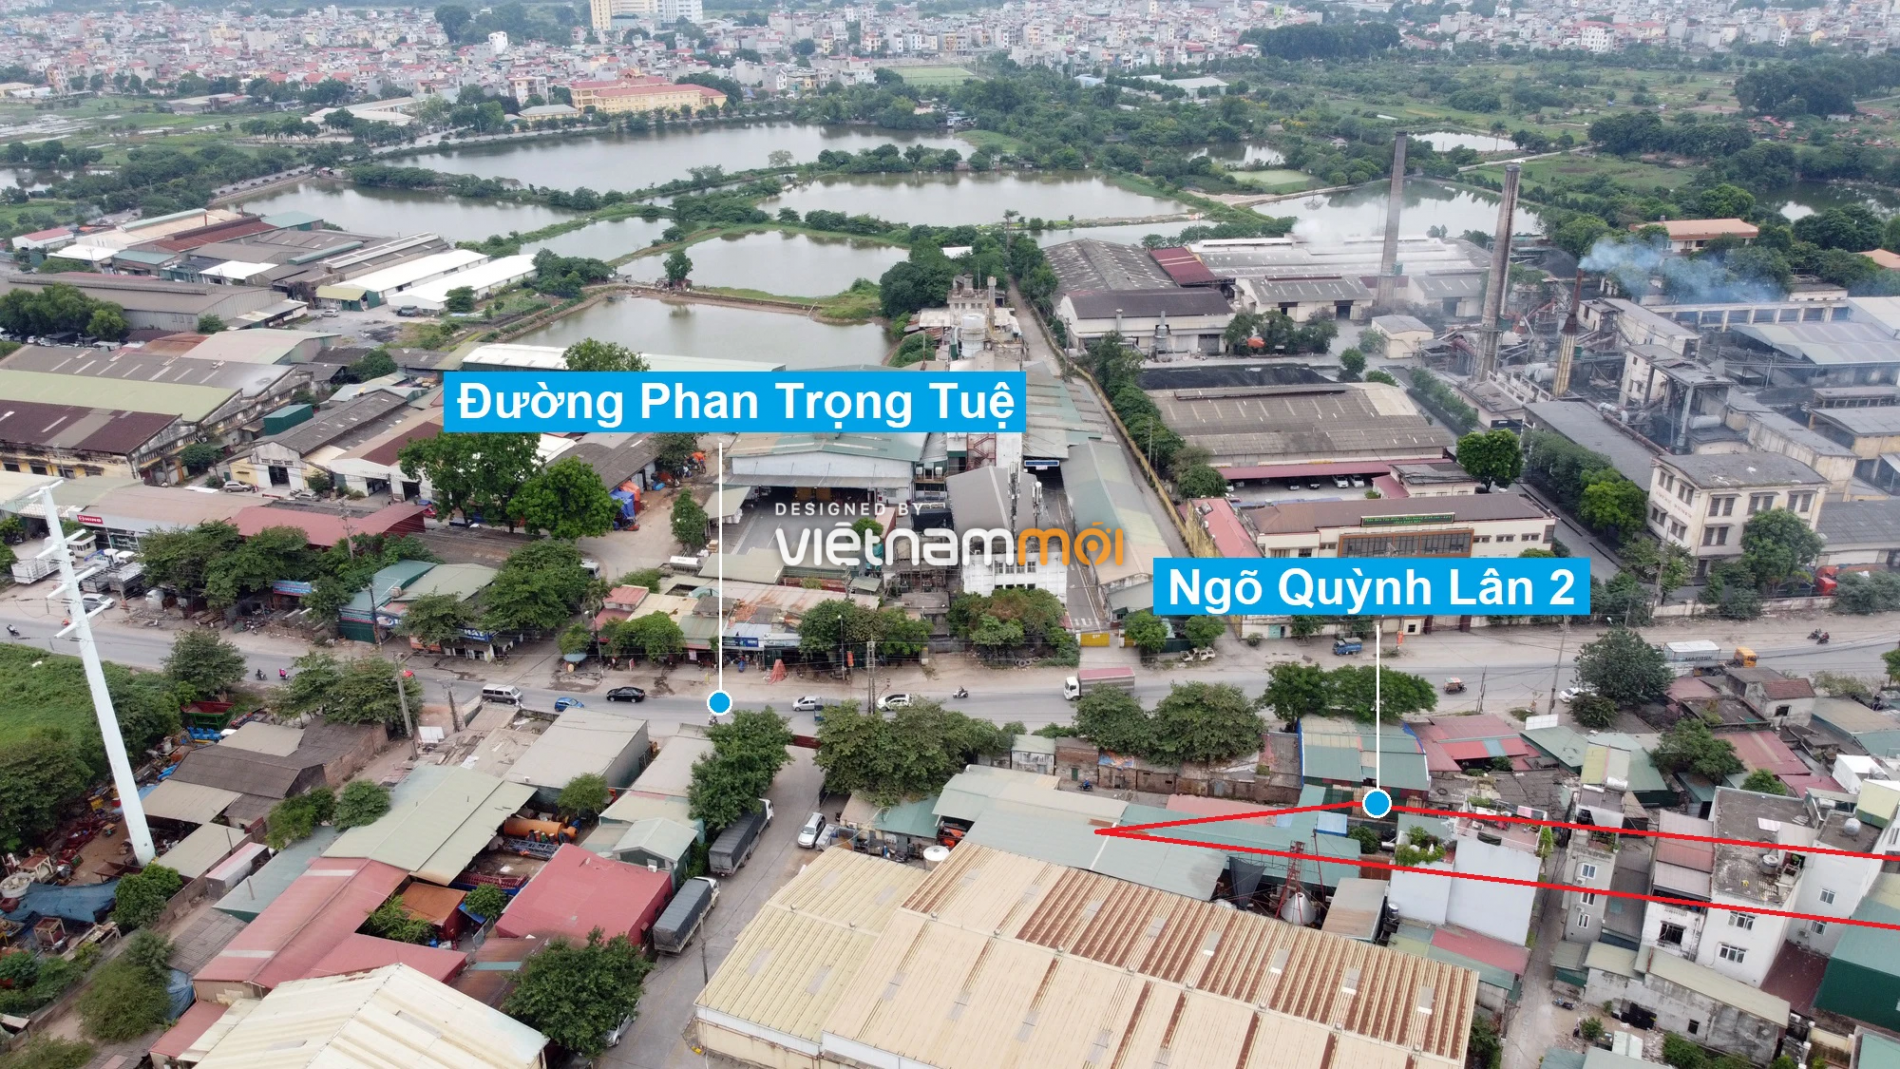 Những khu đất sắp thu hồi để mở đường ở xã Vĩnh Quỳnh, Thanh Trì, Hà Nội (phần 1) - Ảnh 10.